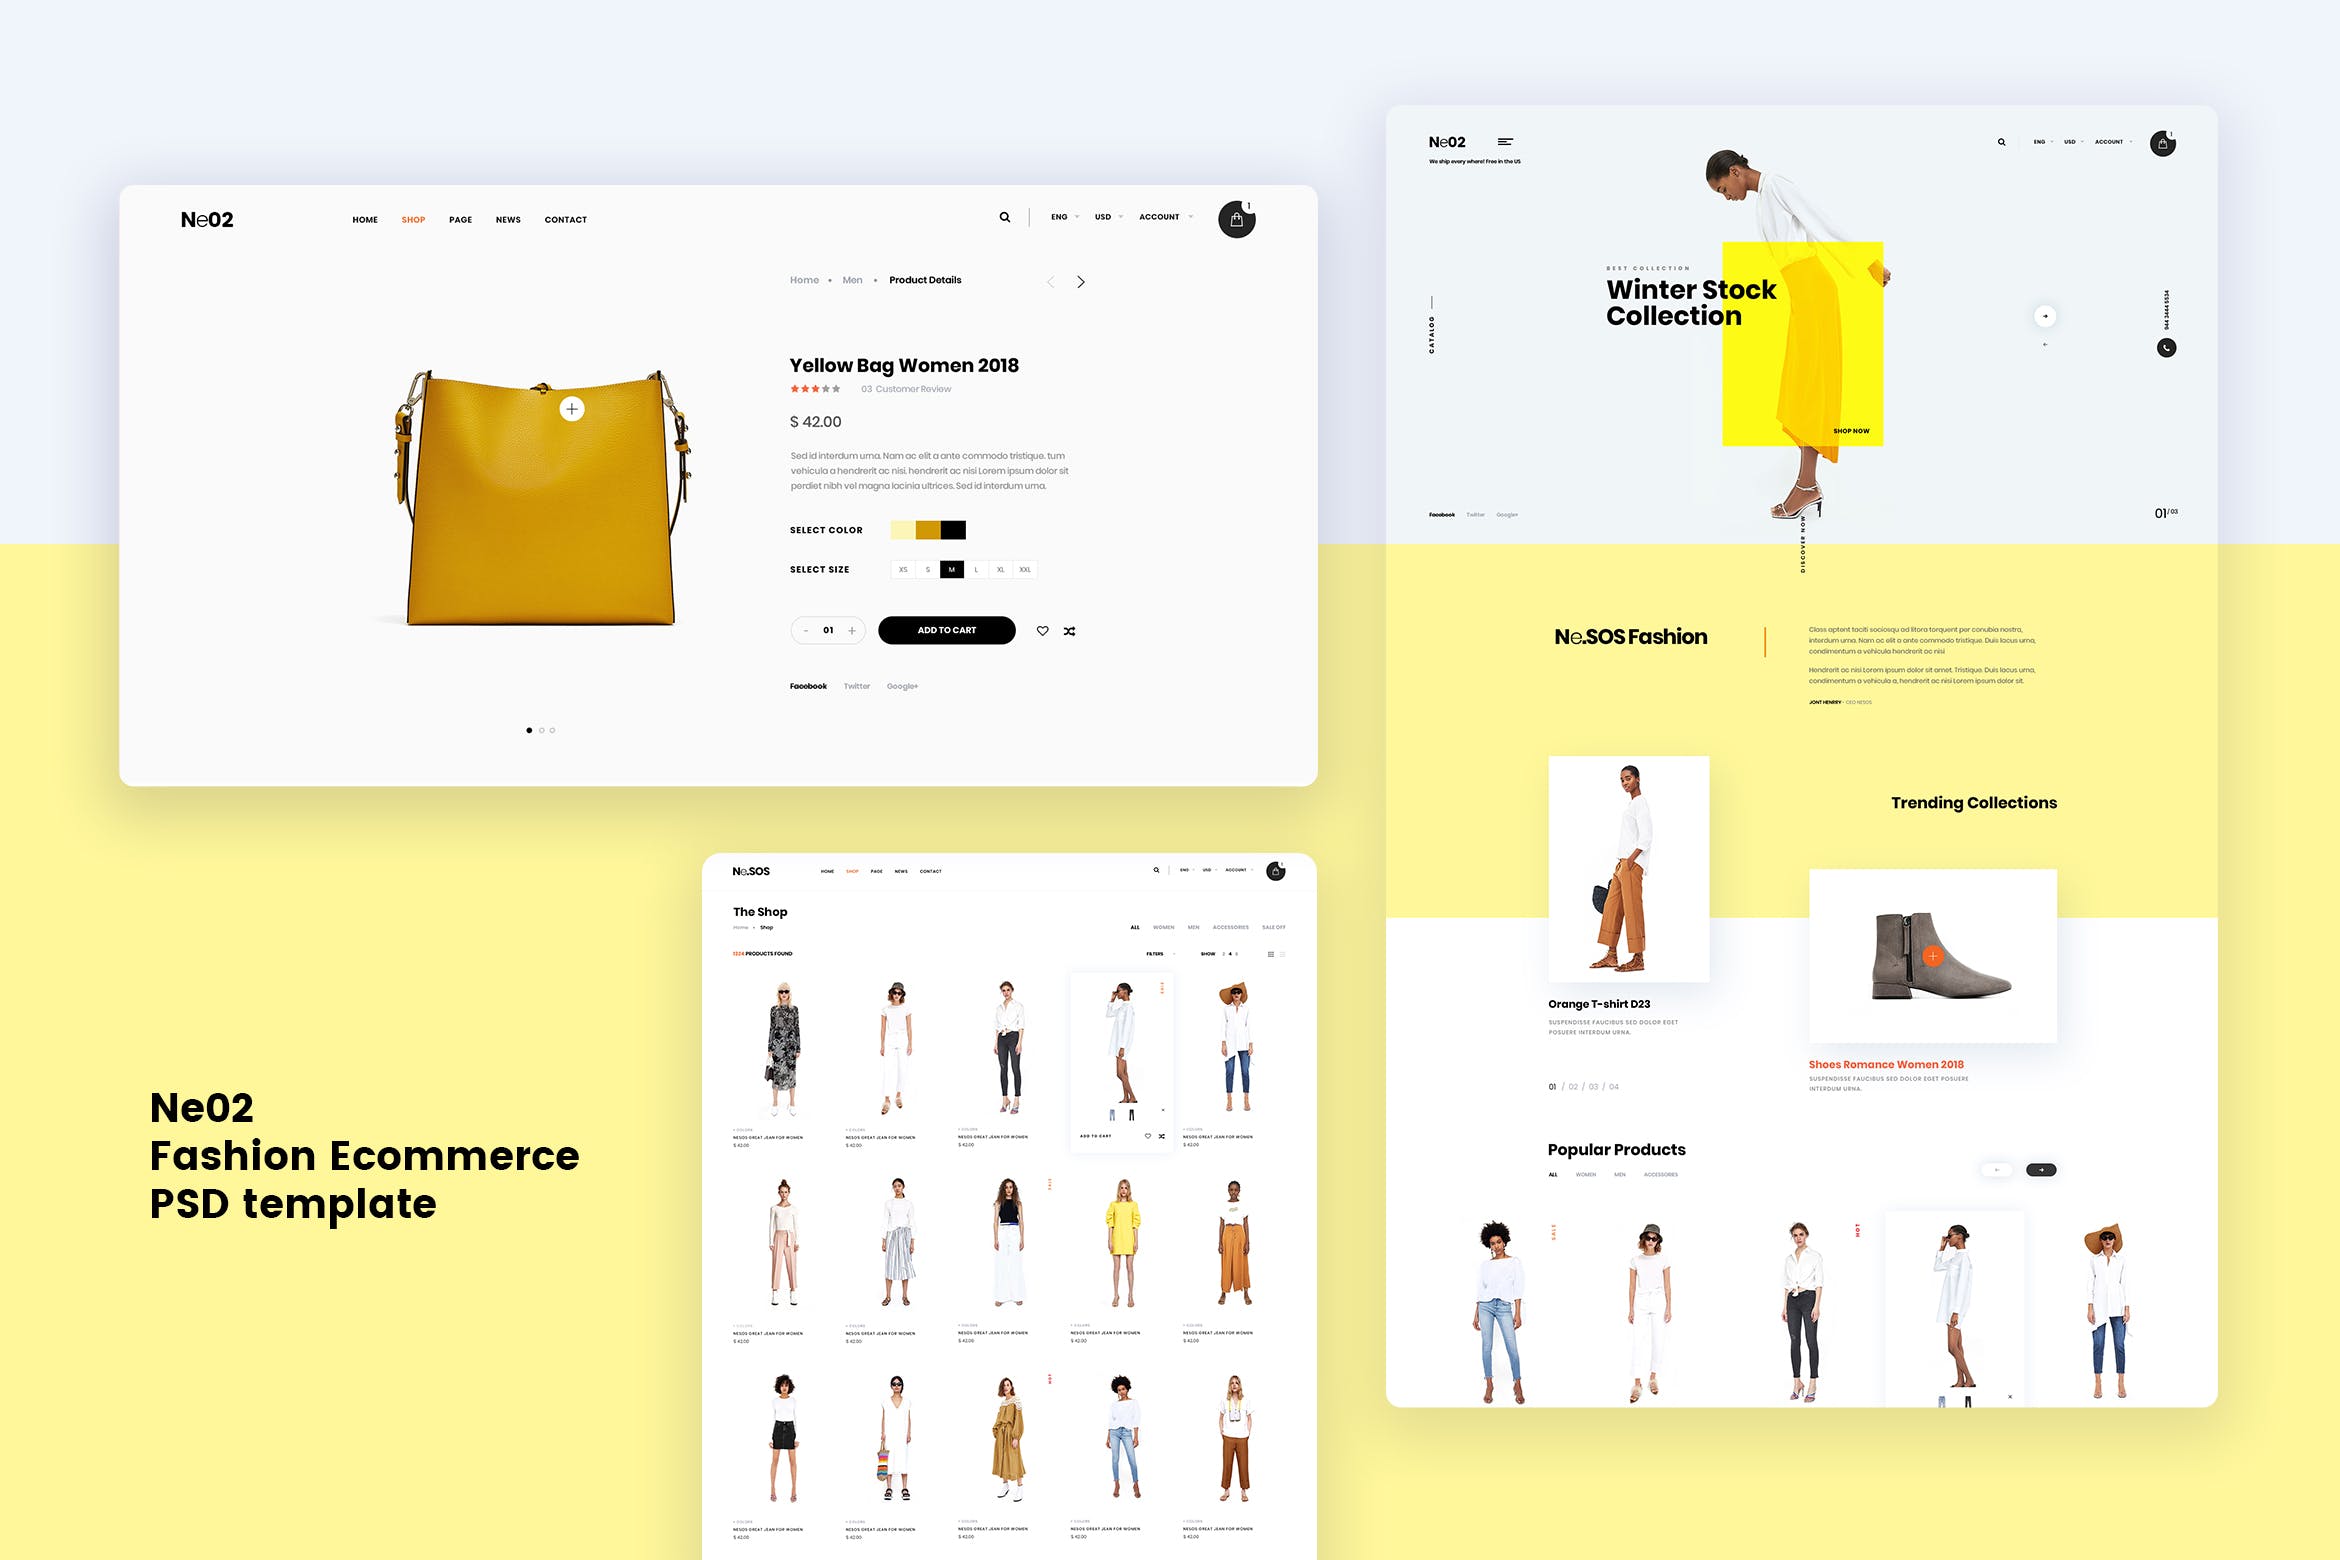 时尚服装电商网上商城设计PSD模板素材 Ne02 – Fashion Ecommerce PSD template插图